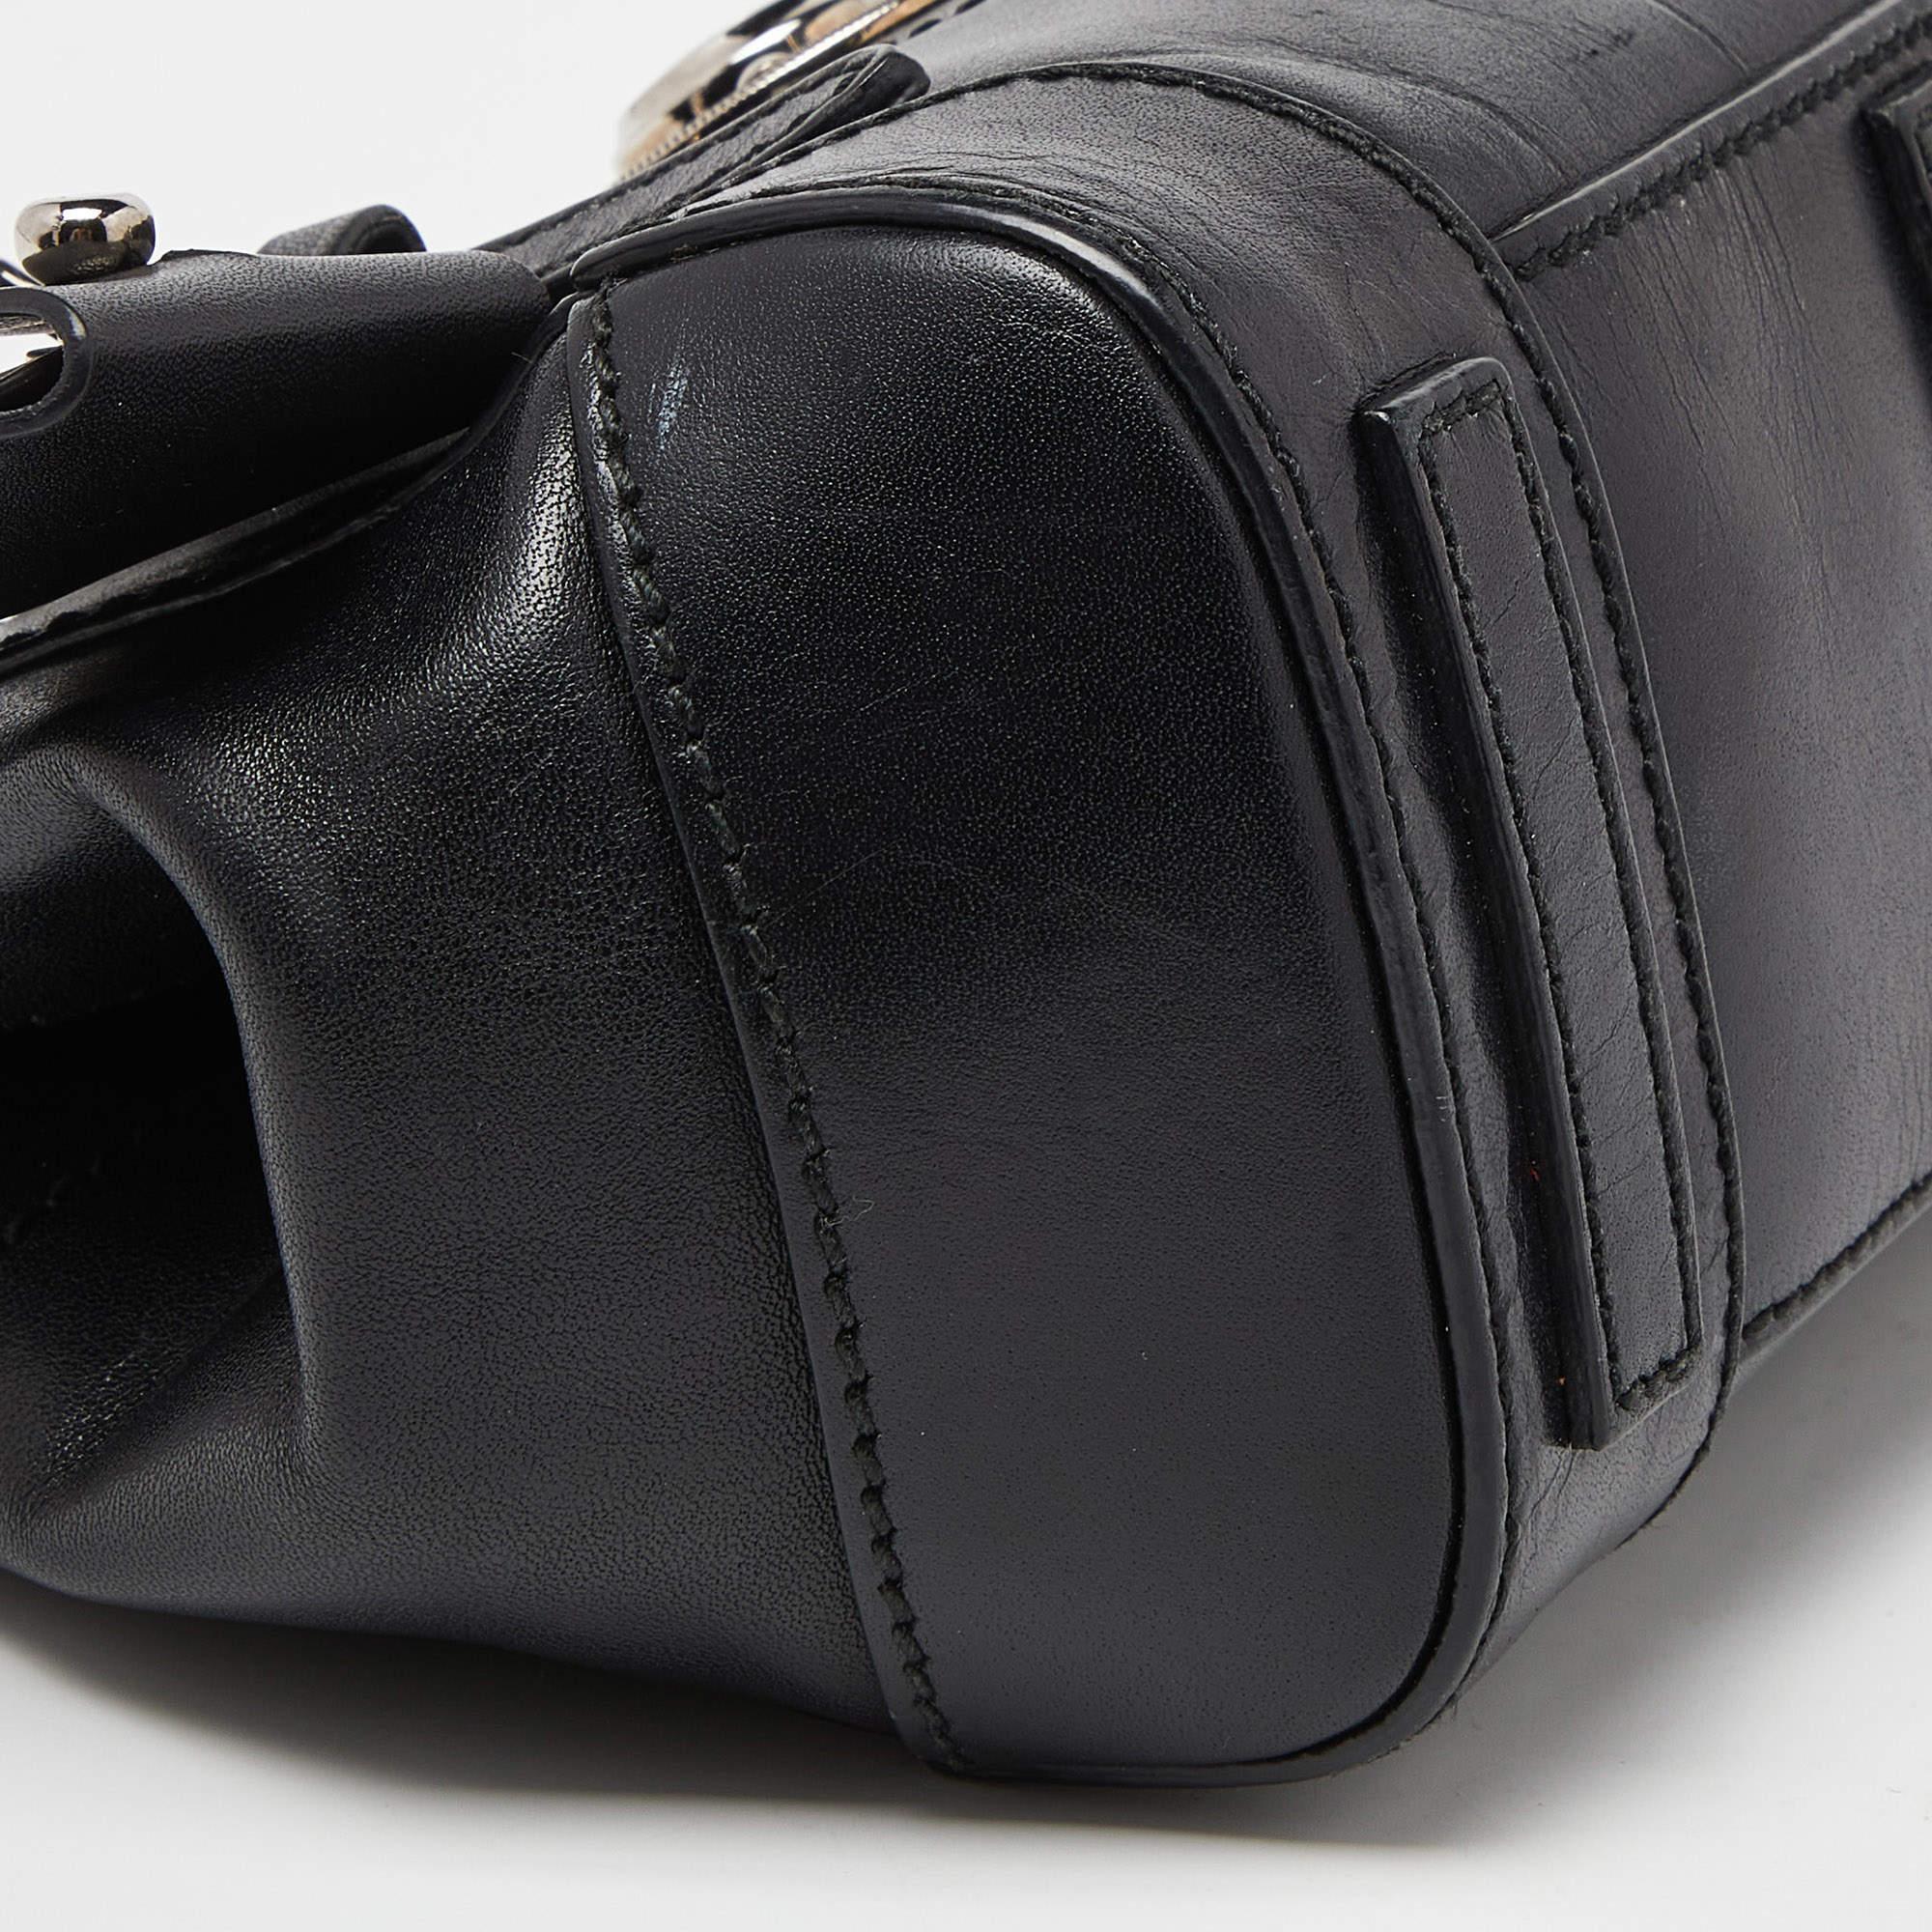 Ralph Lauren Black Leather Mini Ricky Tote In Good Condition For Sale In Dubai, Al Qouz 2